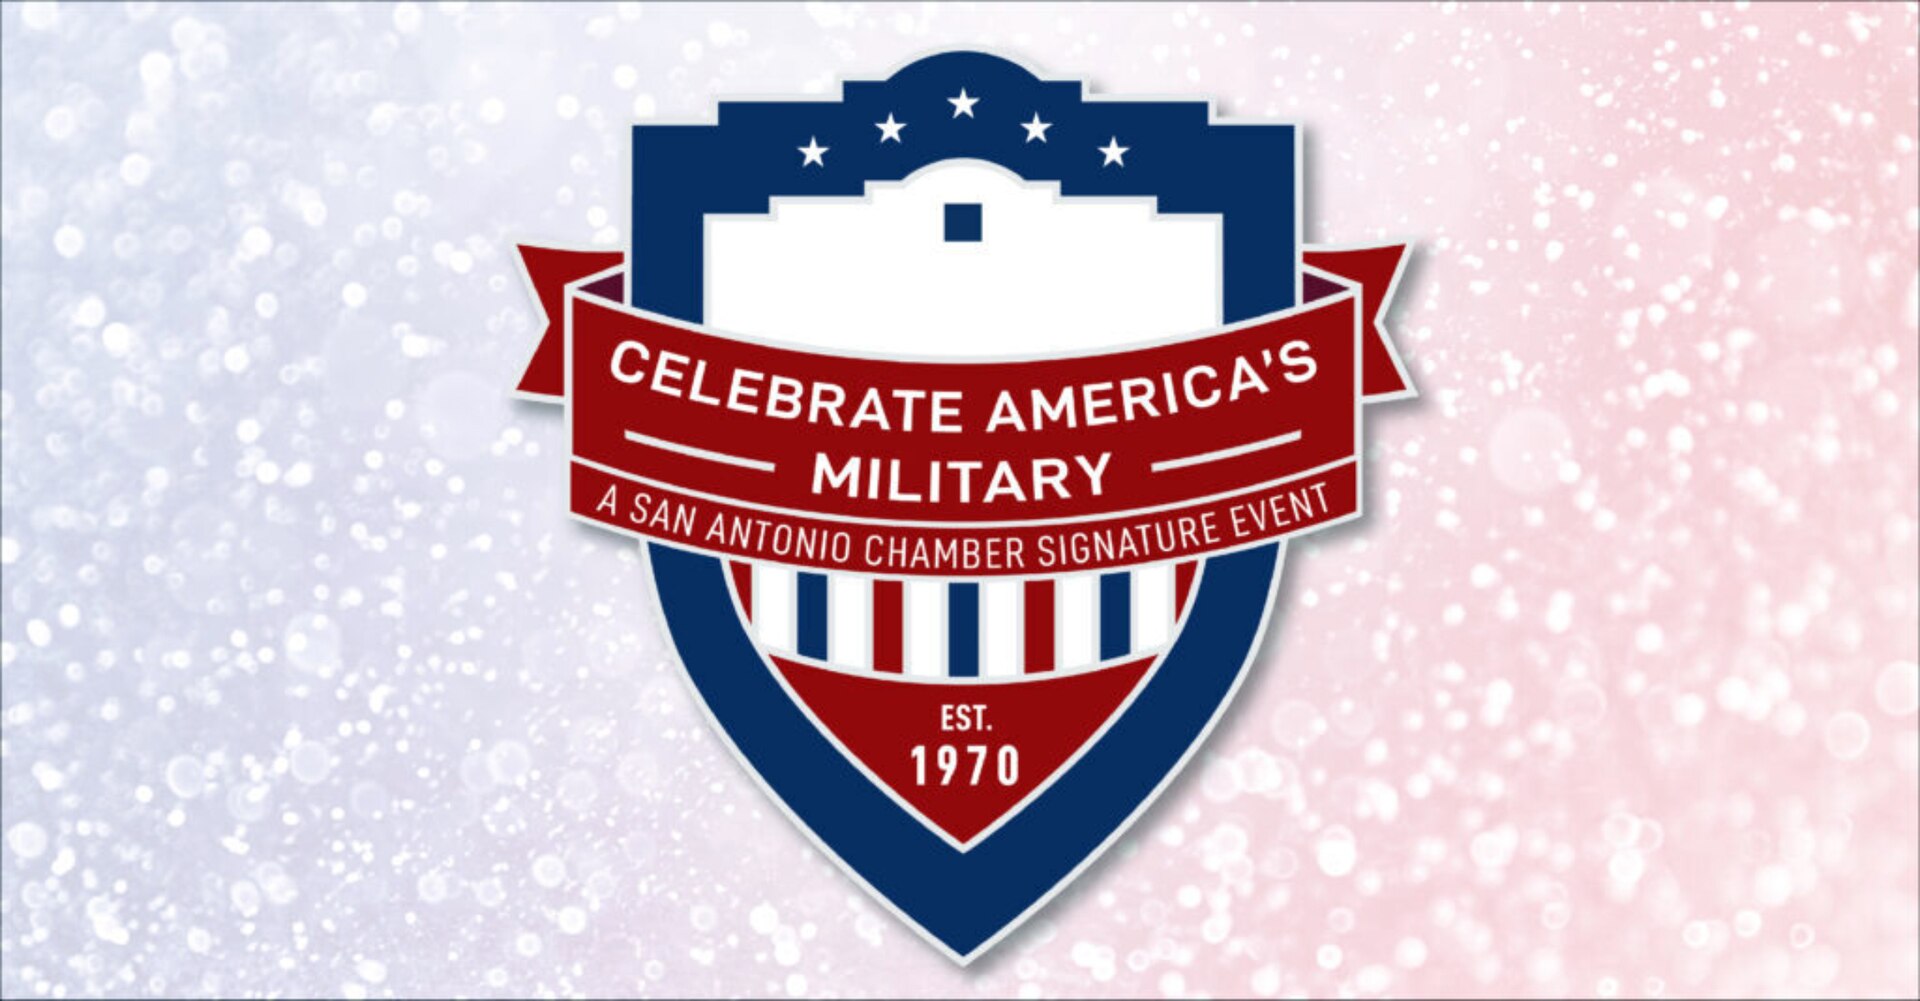 Celebrate America’s Military in November